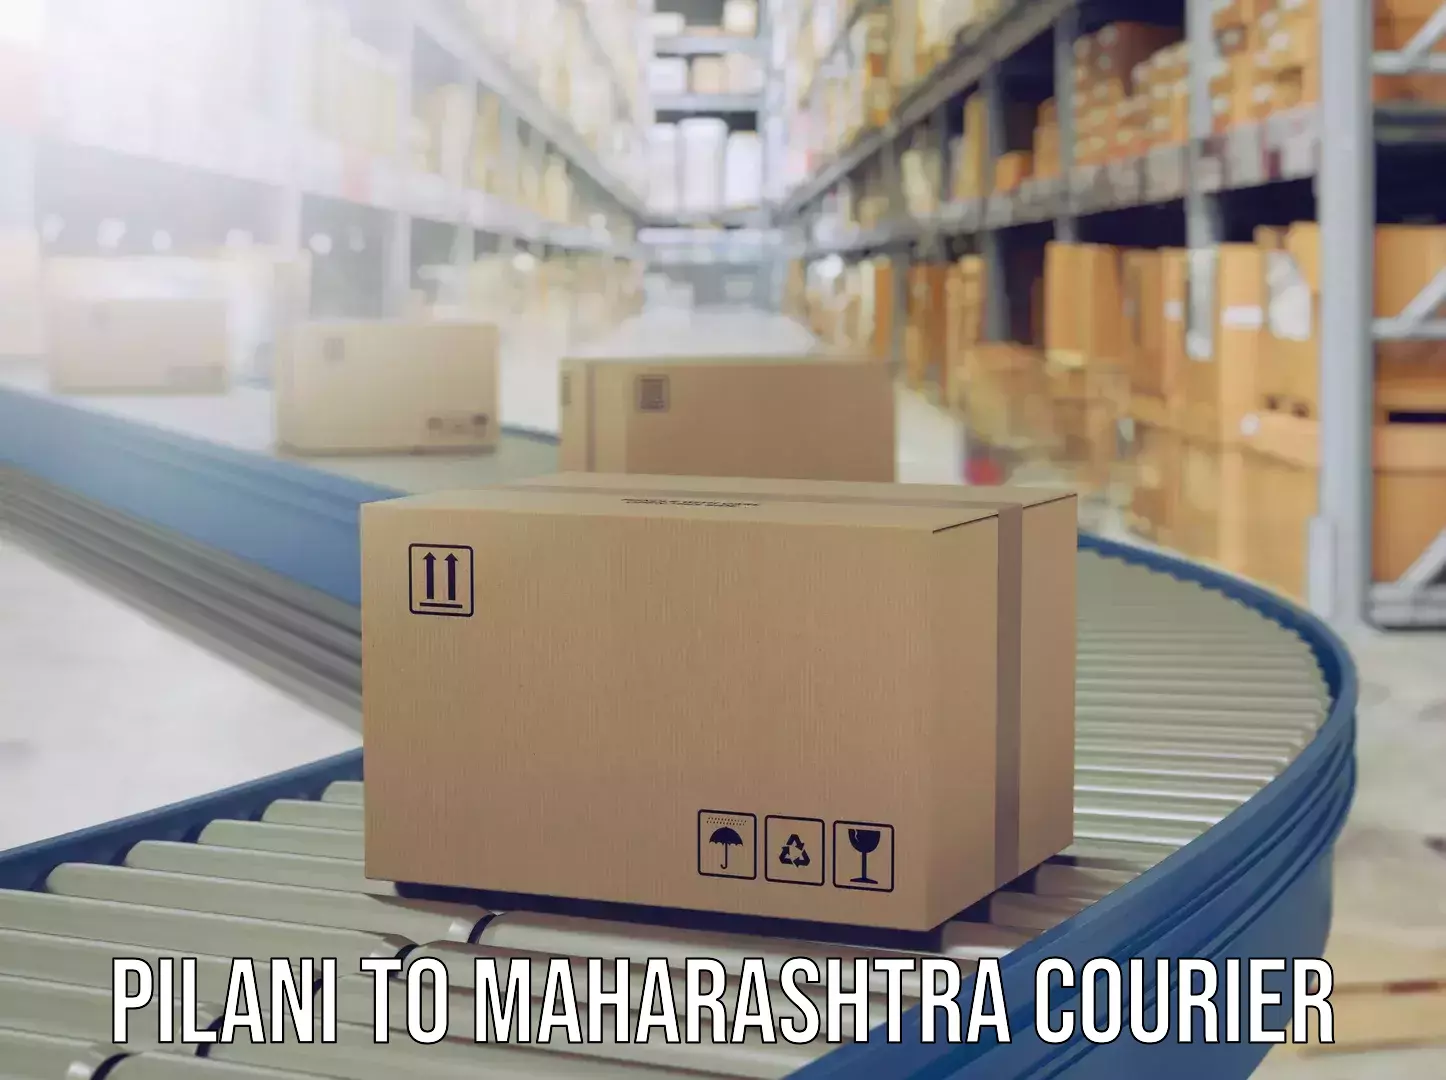 Baggage shipping experts Pilani to Maharashtra